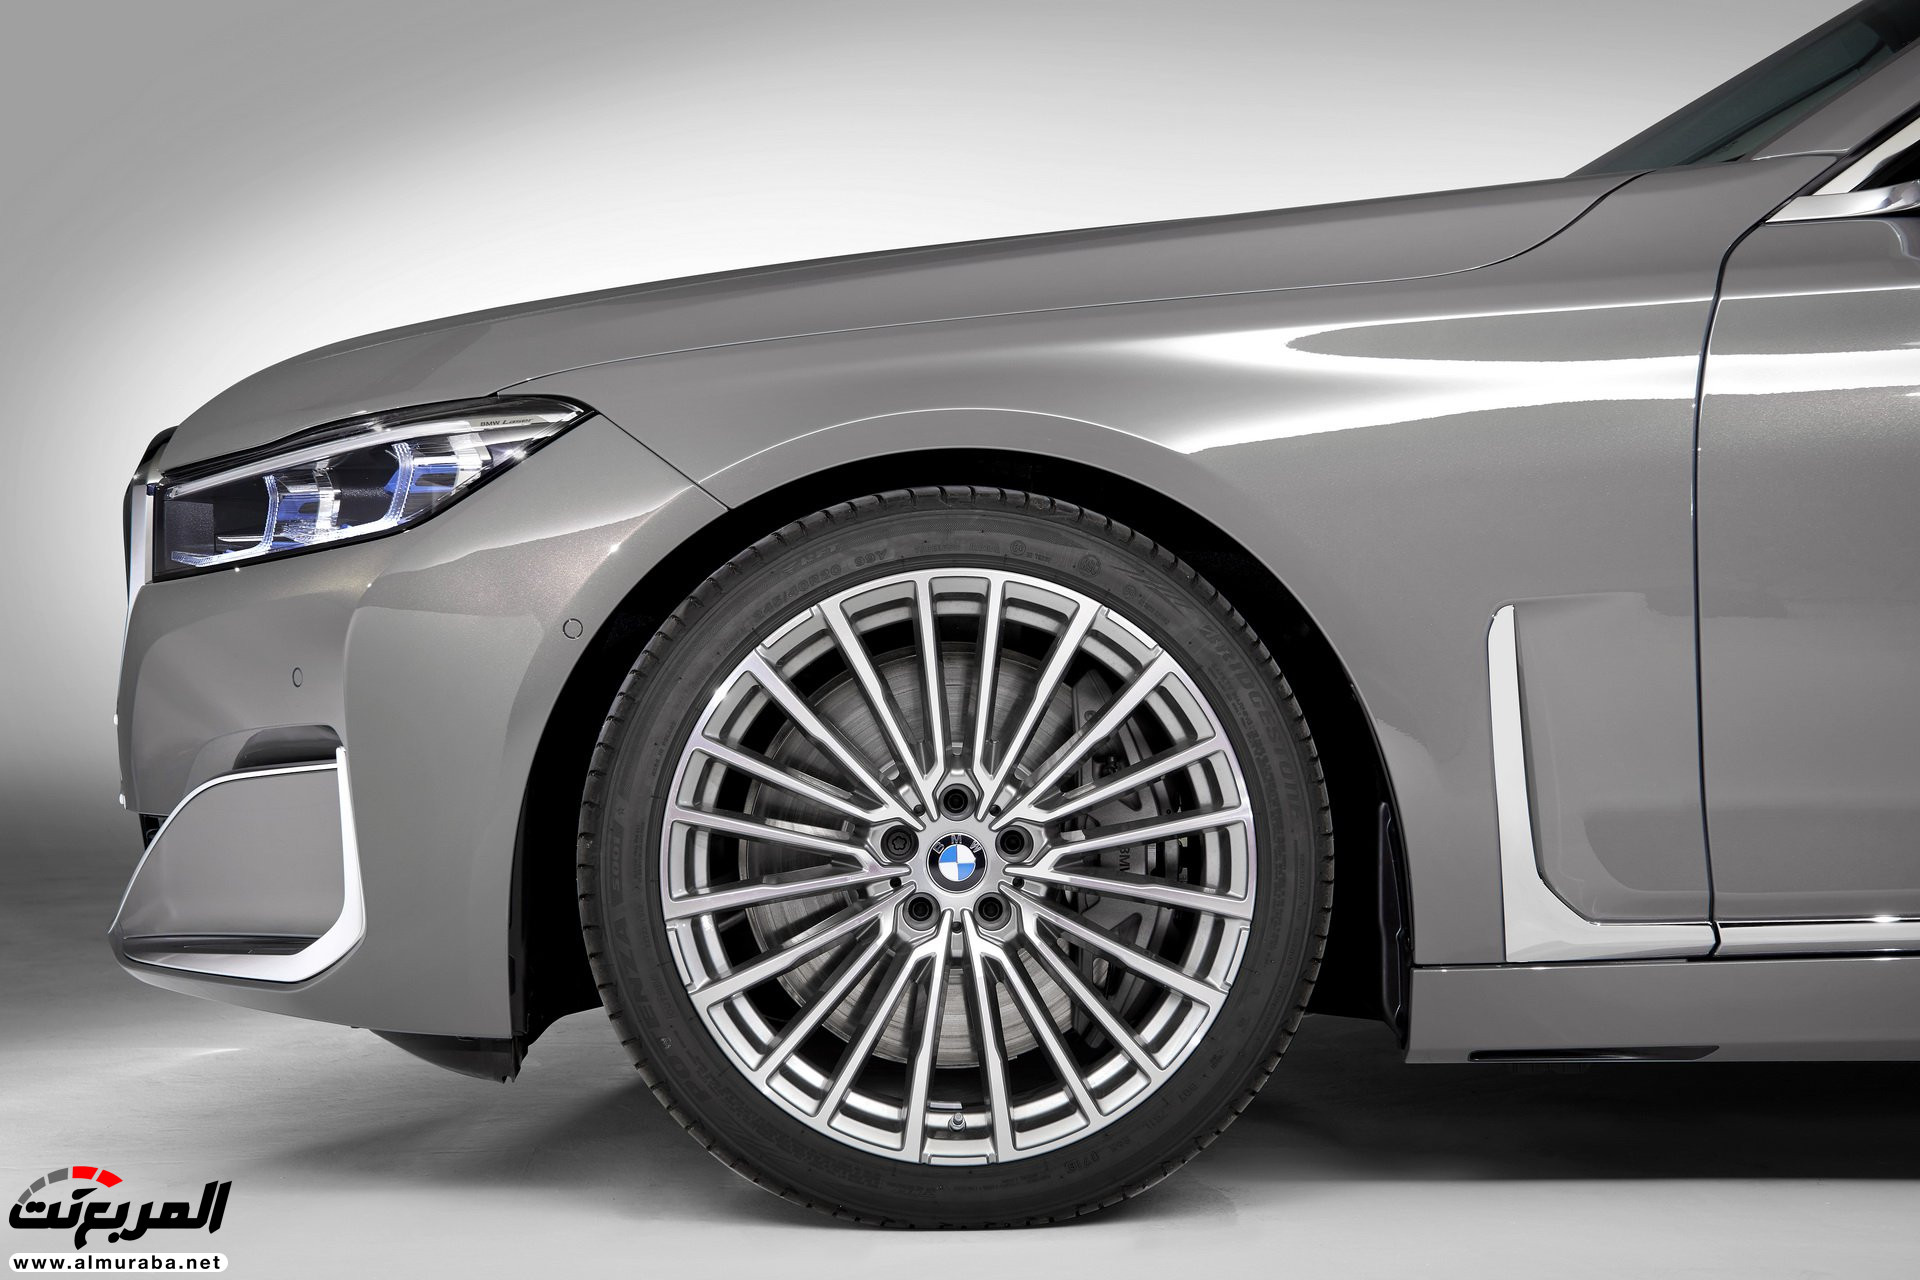 بي ام دبليو الفئة السابعة 2020 المحدثة تكشف نفسها رسمياً "صور ومواصفات" BMW 7 Series 289